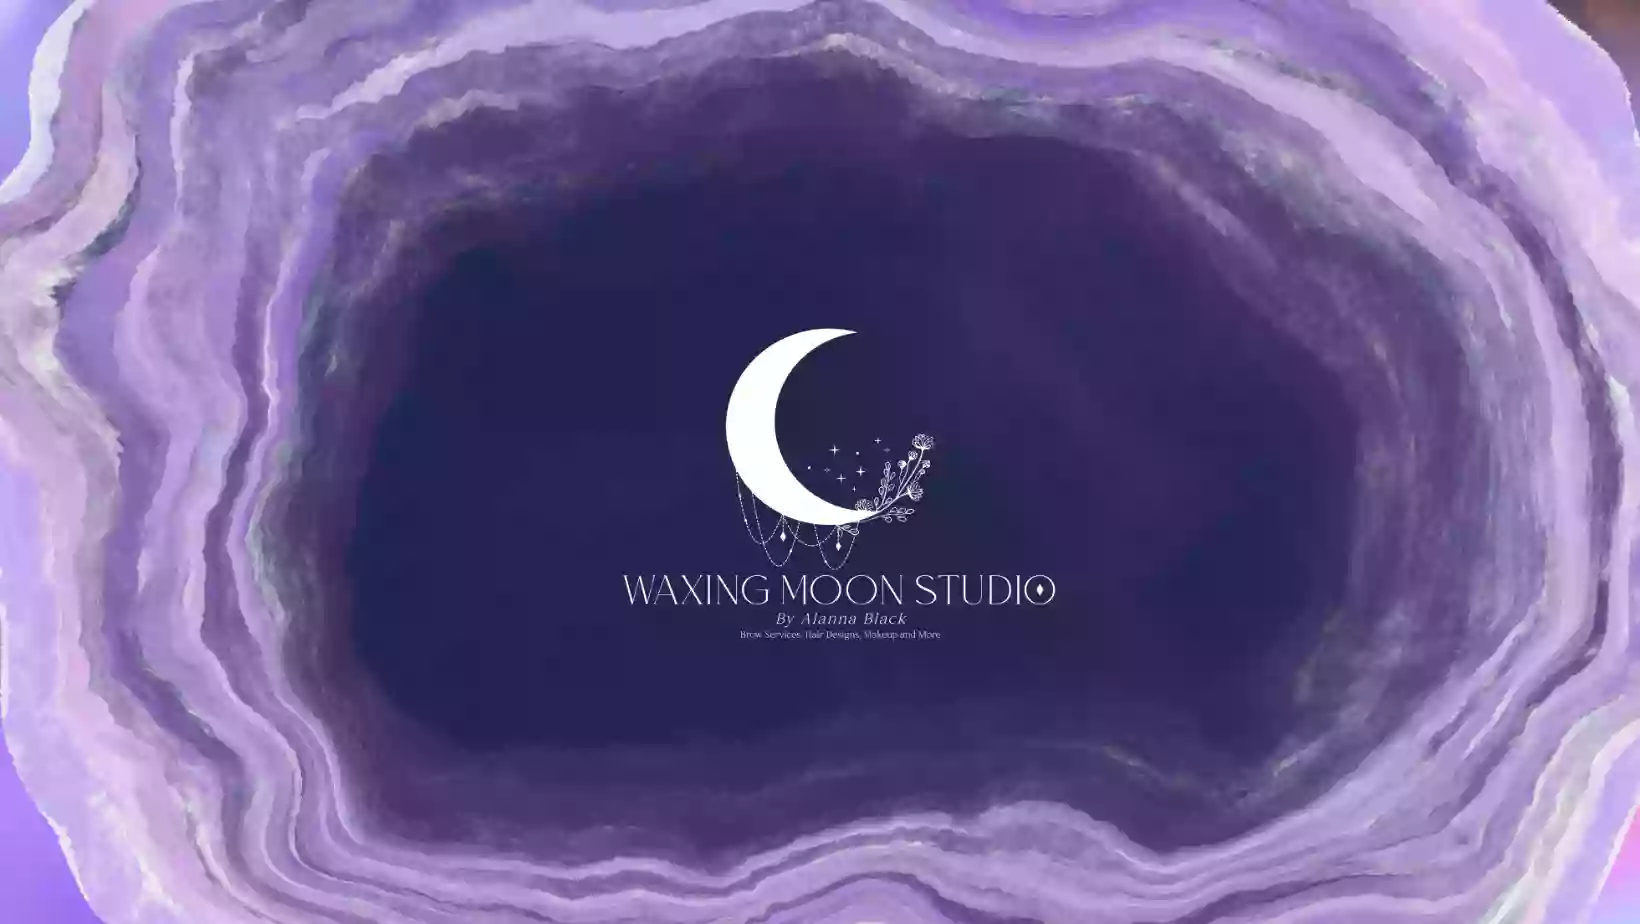 Waxing Moon Studio